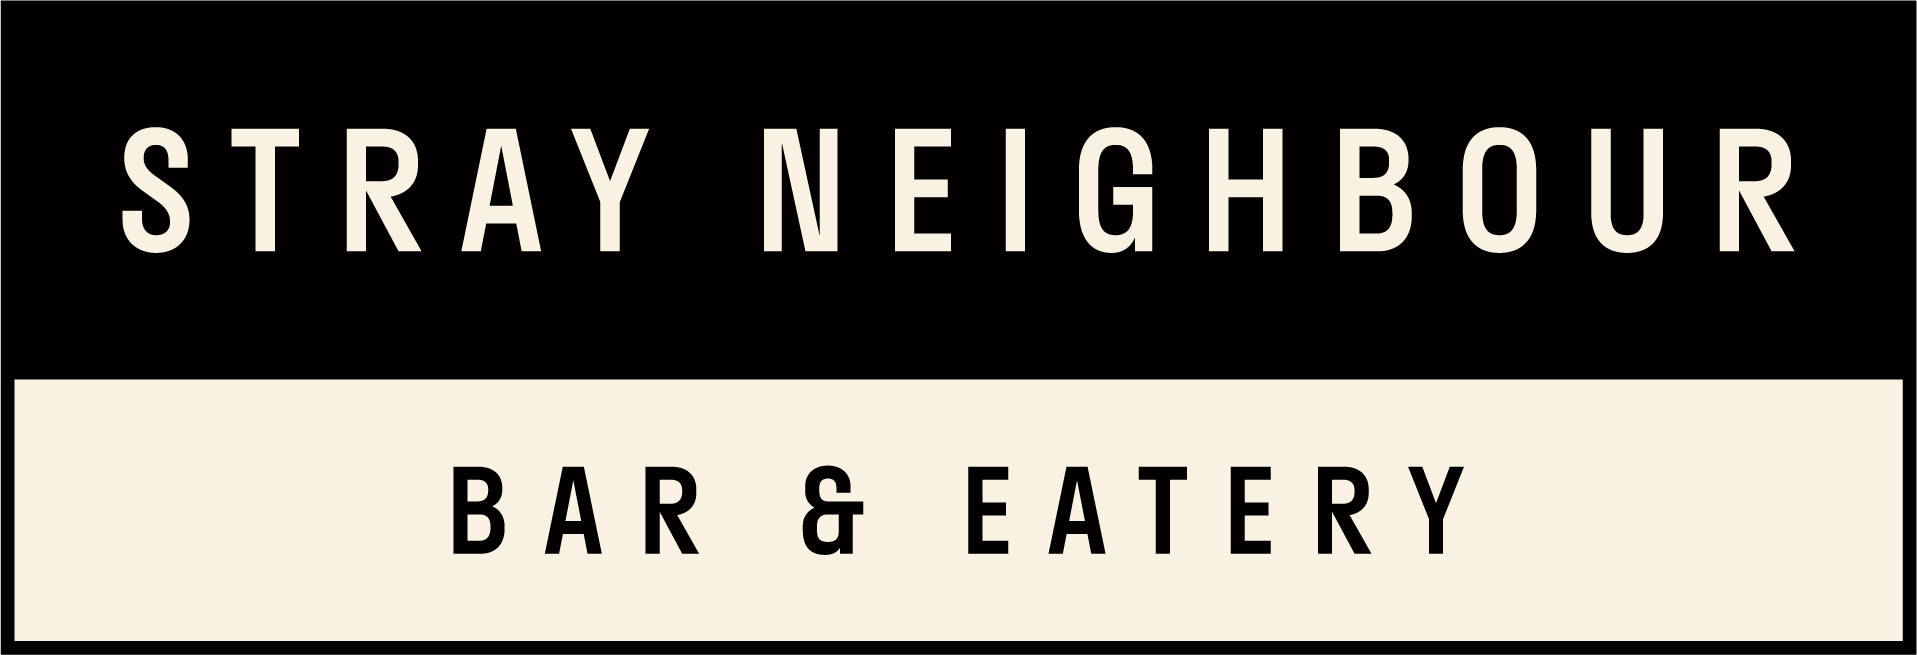 Stray Neighbour Eatery & Bar